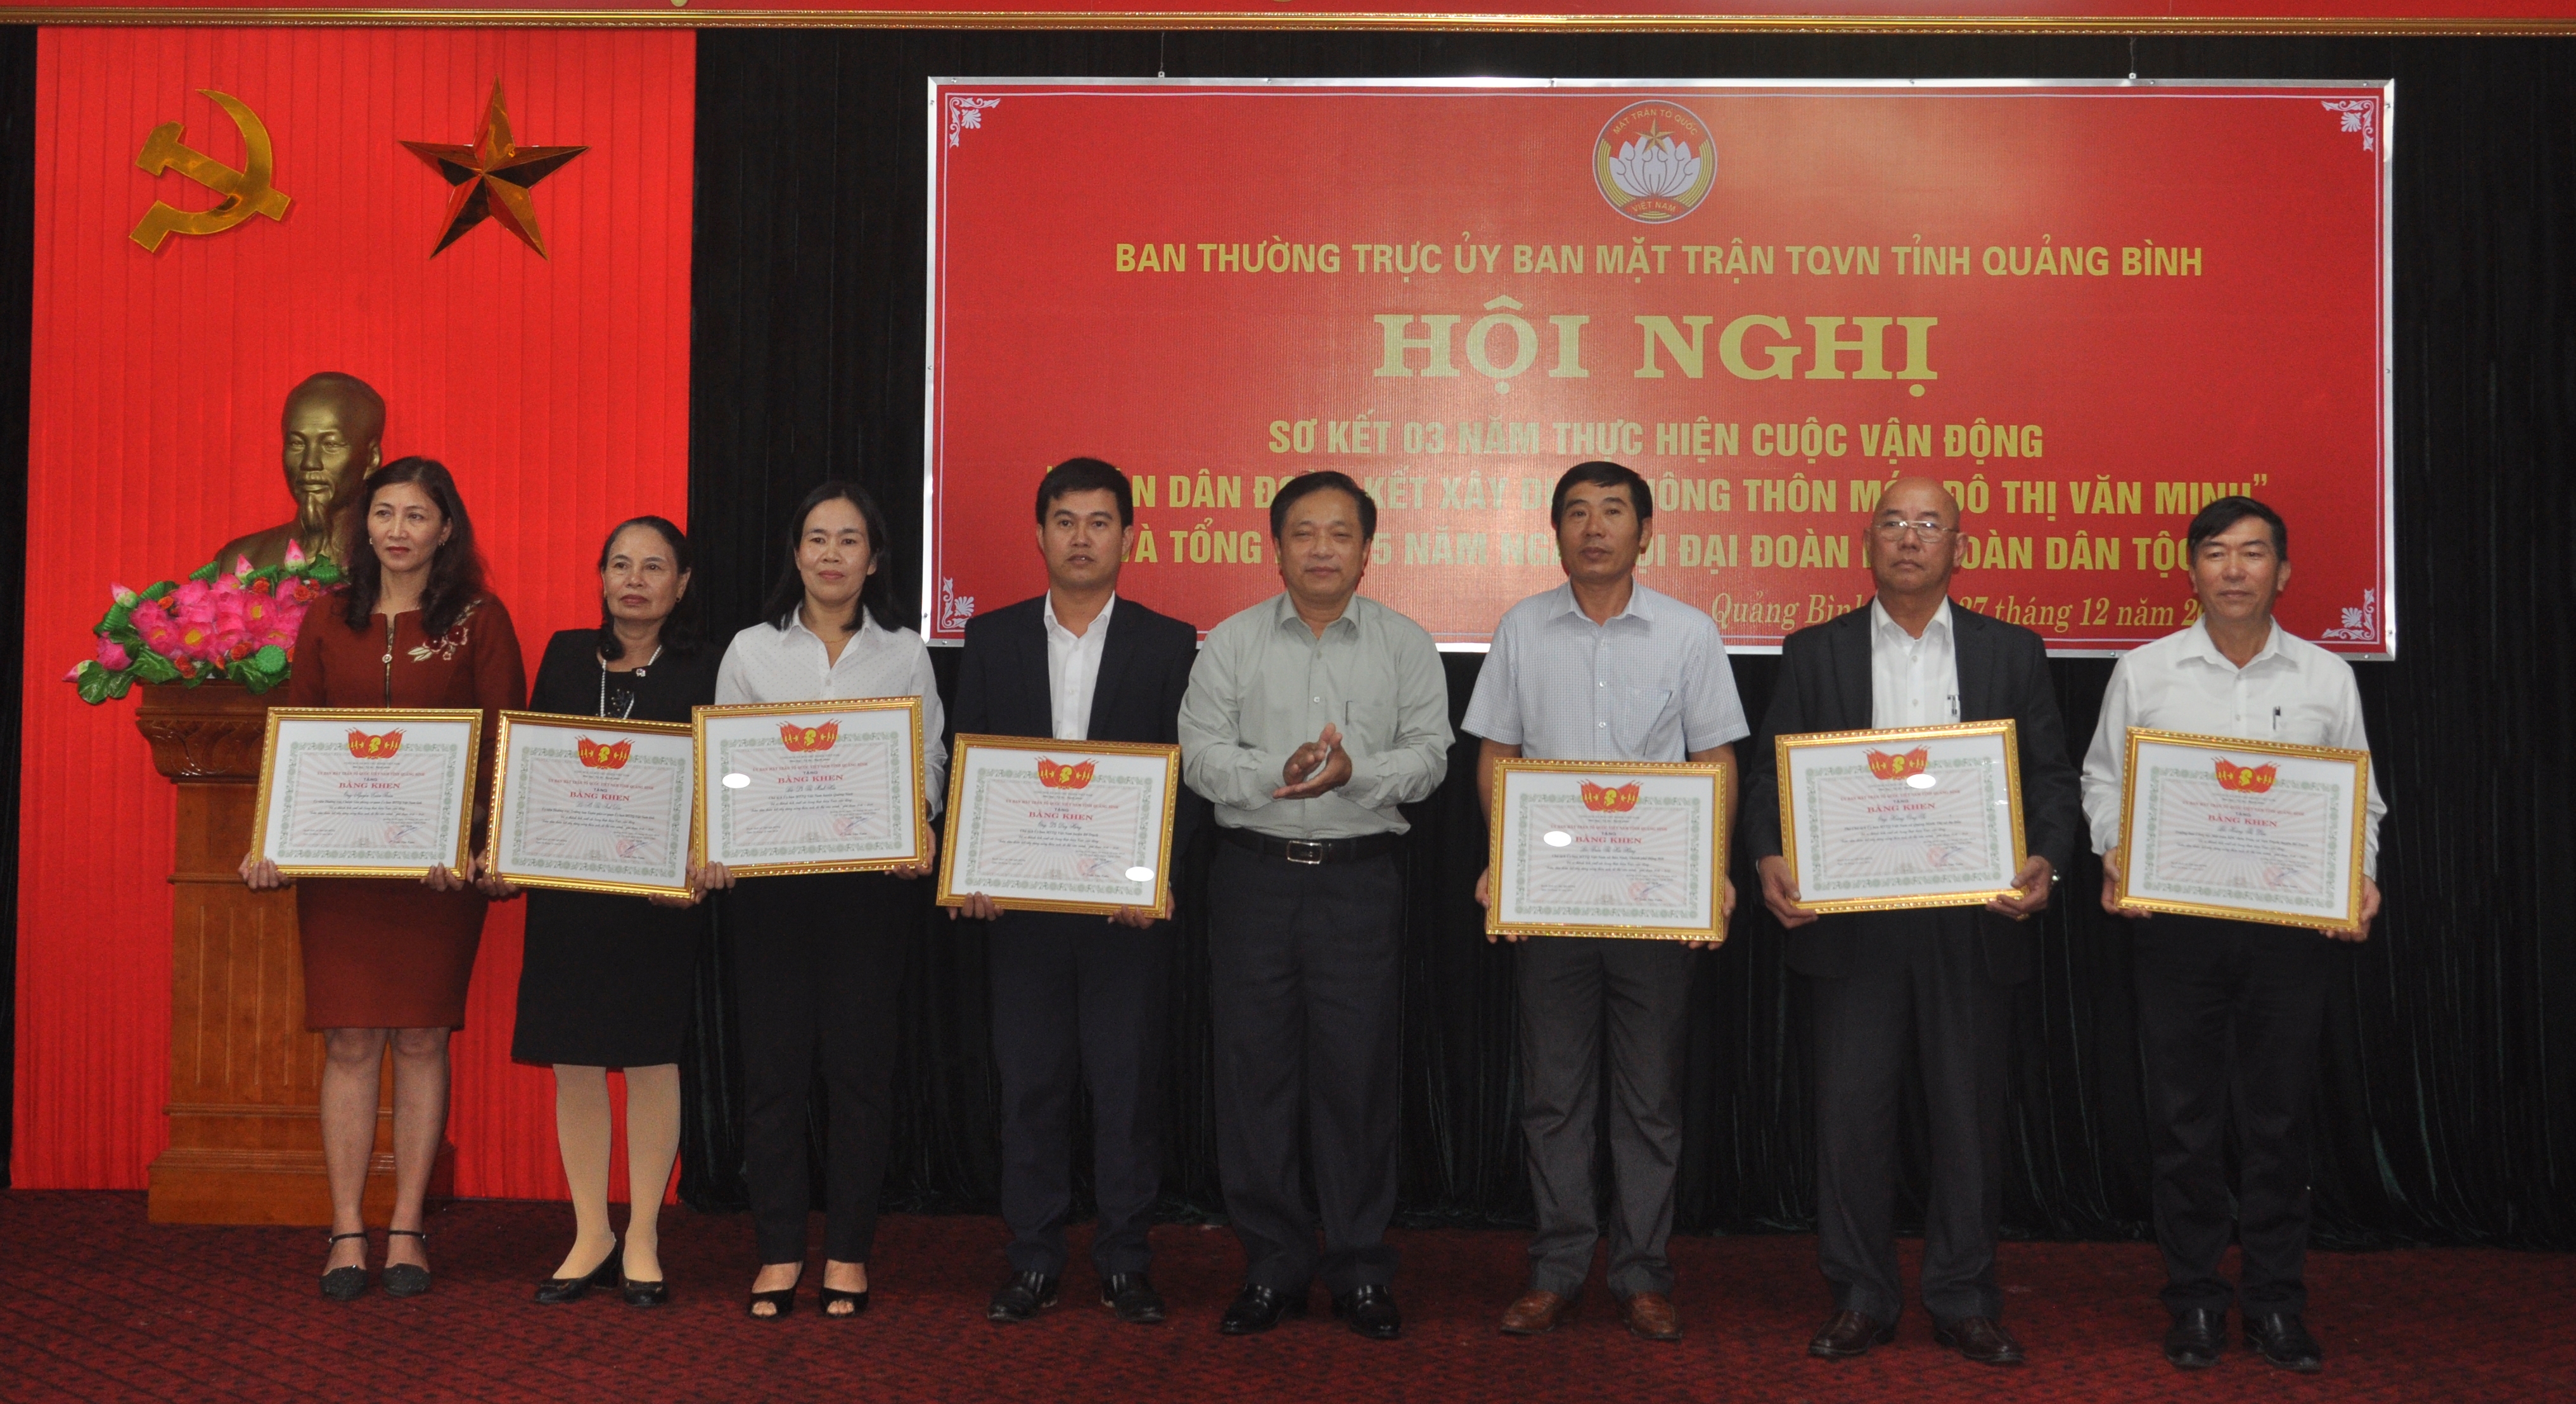  Ông Trương Văn Hởi trao tặng bằng khen của Ủy ban MTTQVN tỉnh cho các cá nhân đạt thành tích trong thực hiện cuộc vận động “Toàn dân đoàn kết xây dựng nông thôn mới, đô thị văn minh”.